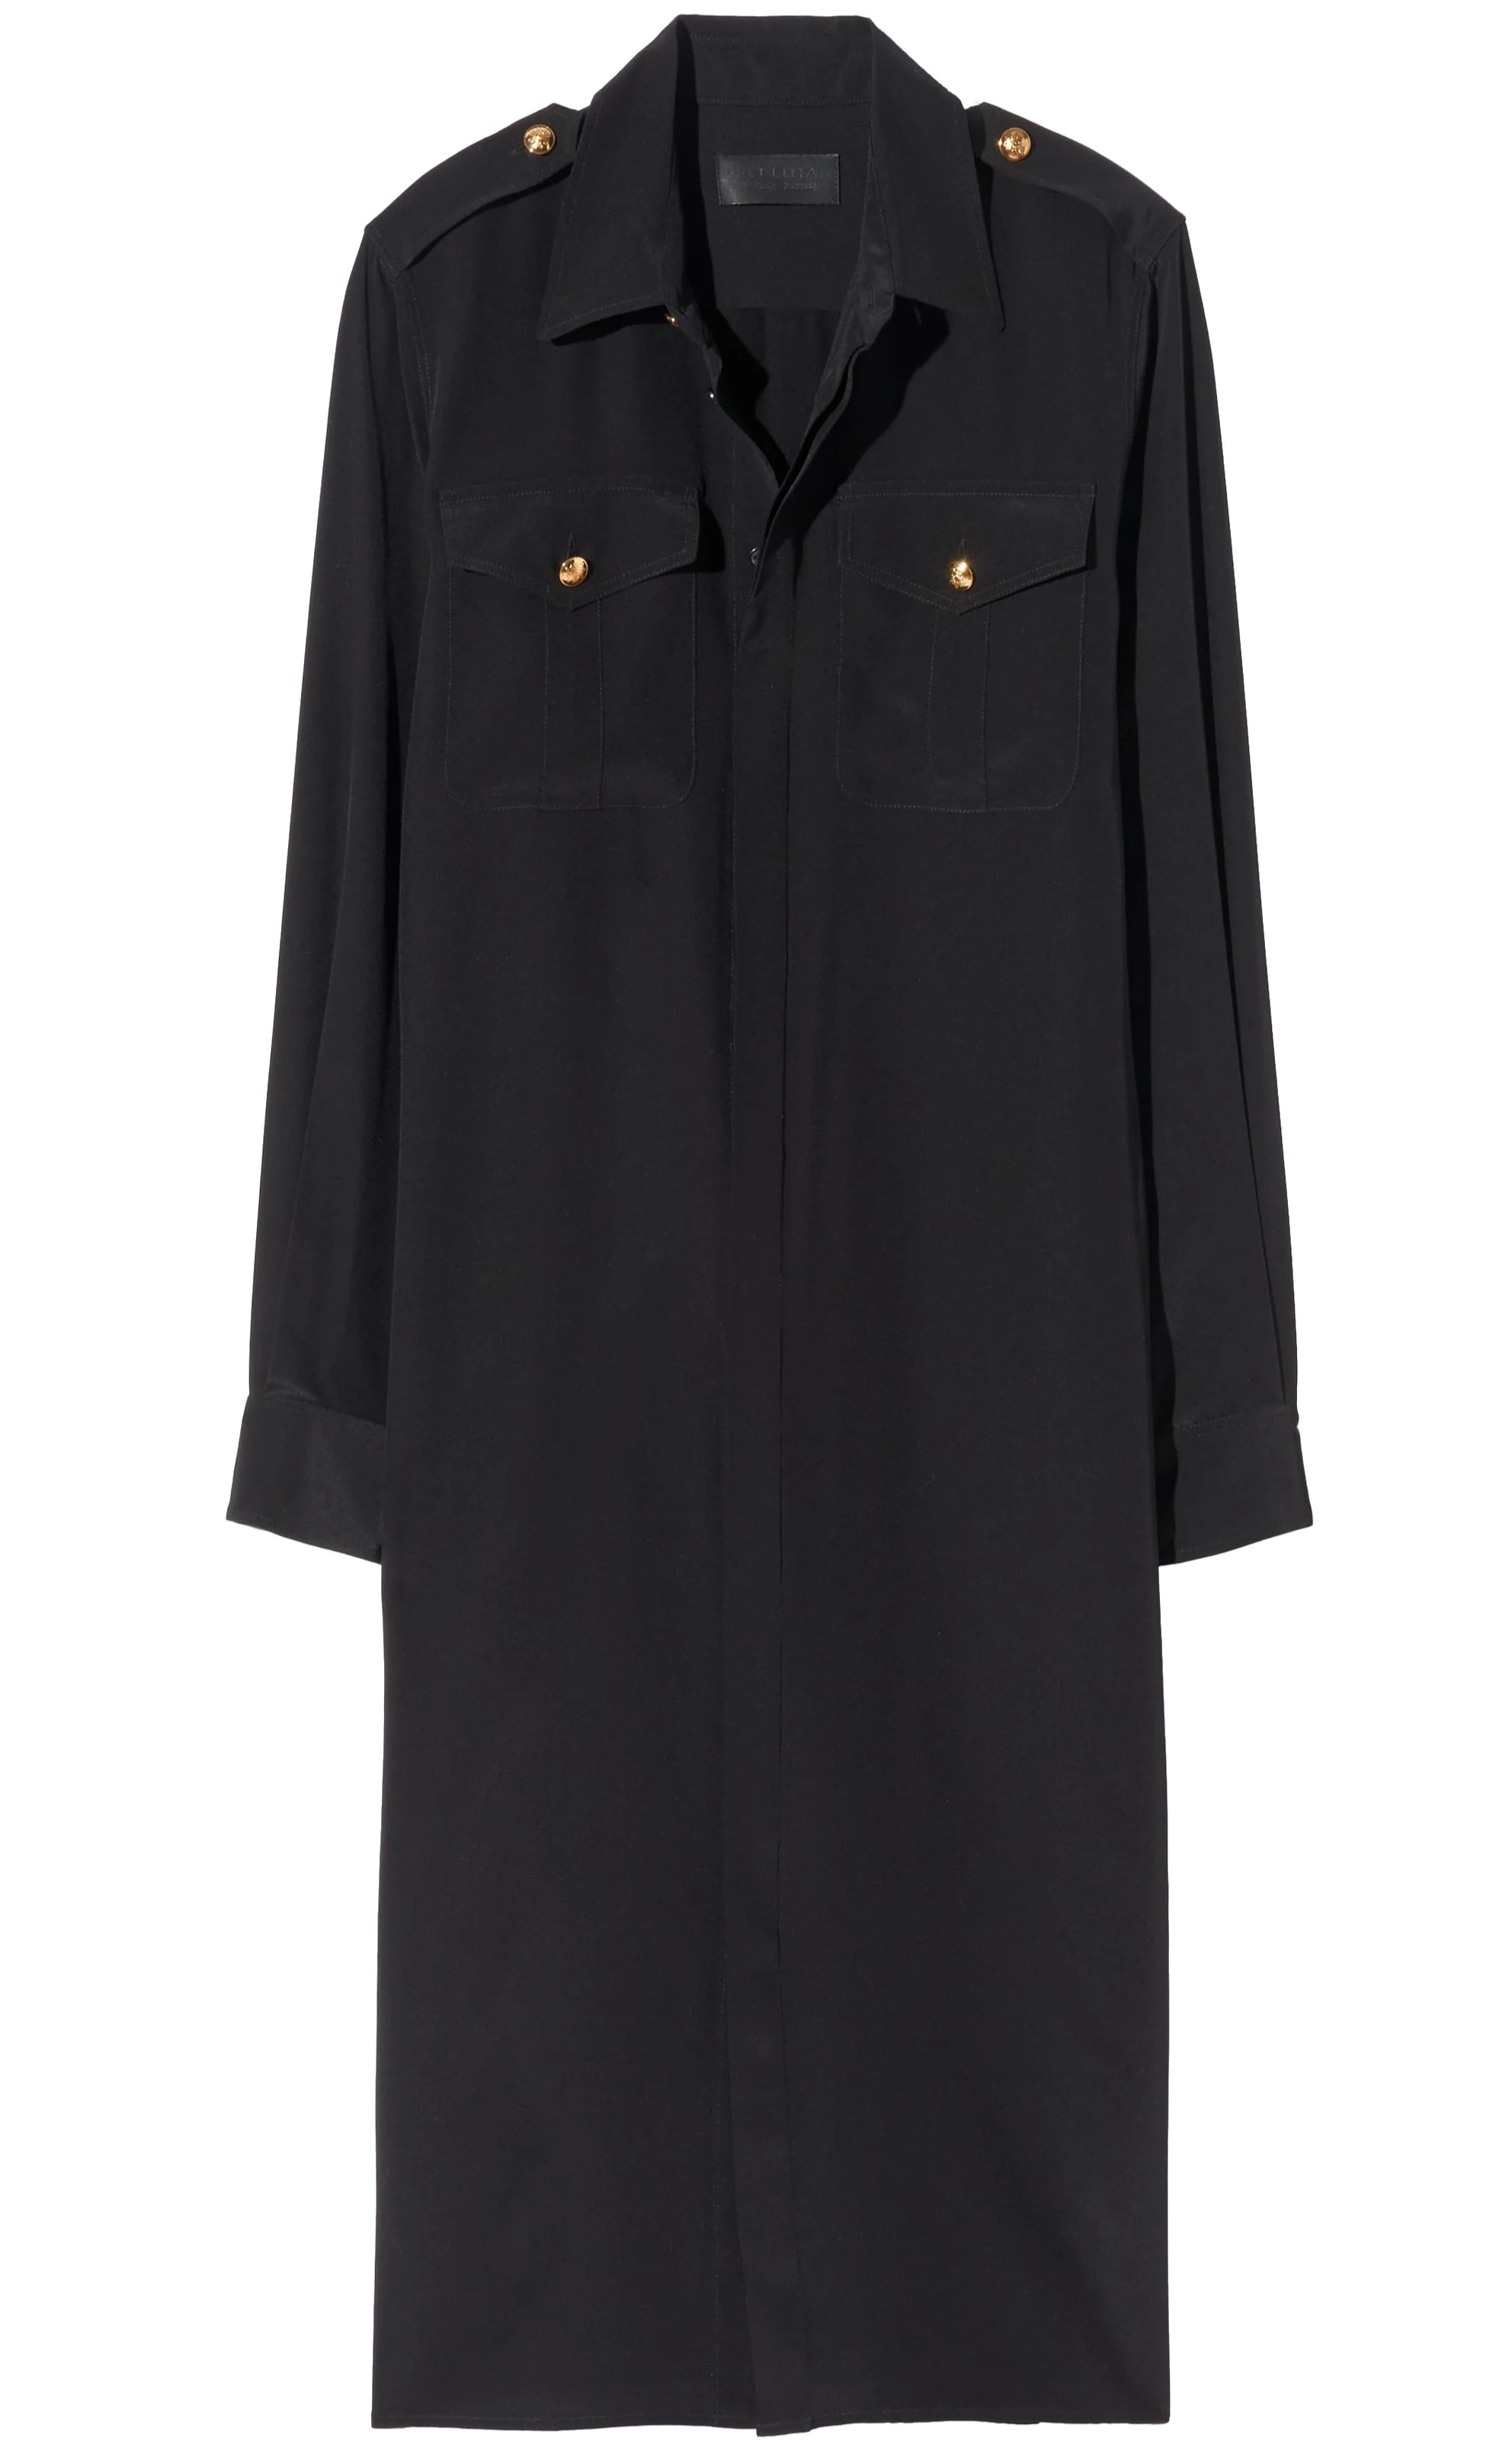 NILI LOTAN Adelaide Silk Shirt Dress in Black